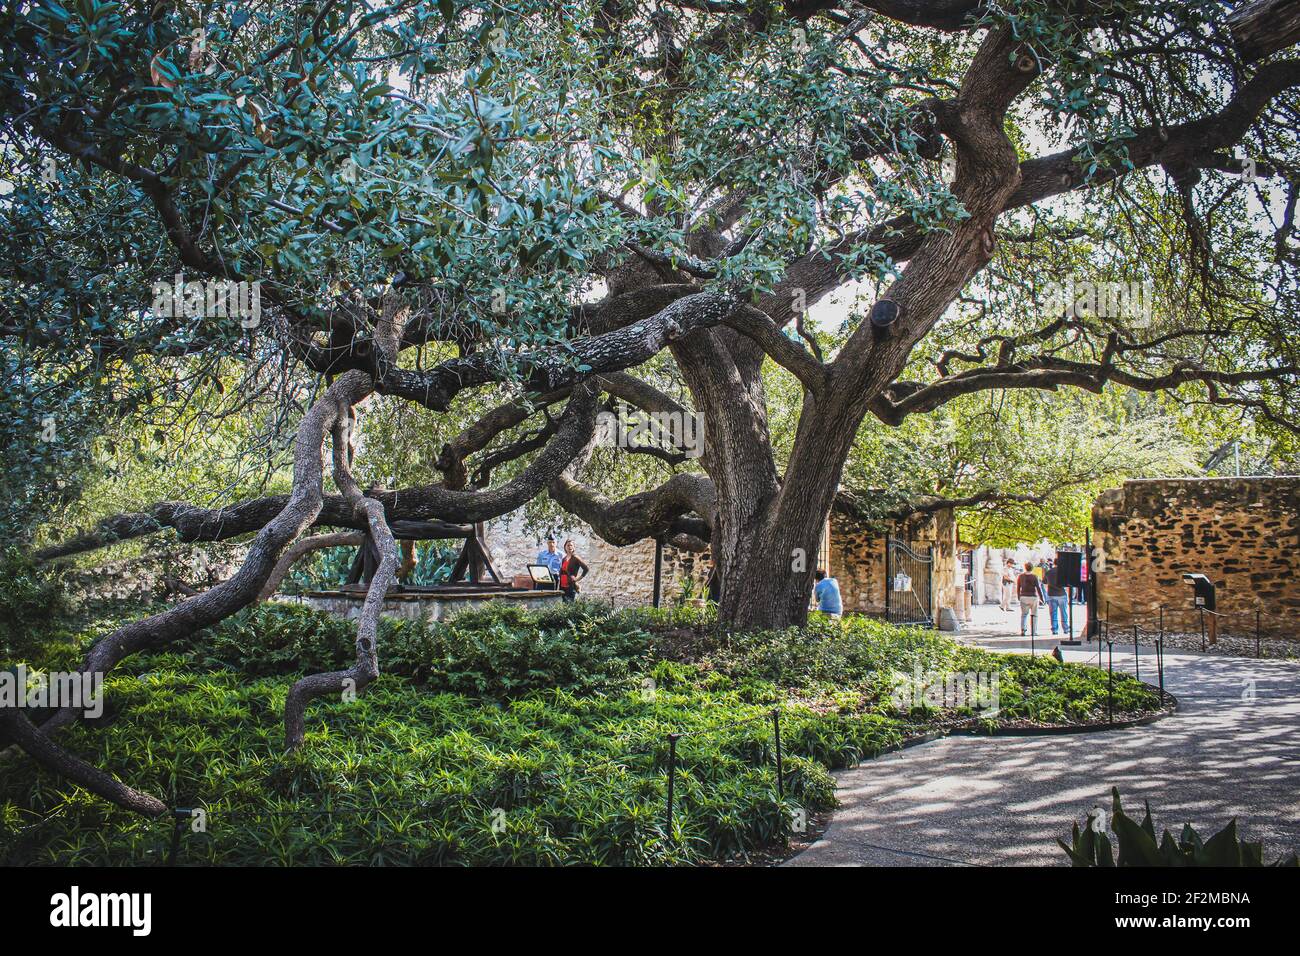 10-18-2012 San Antonio Tx États-Unis - chêne géant Près d'Alamo avec des branches qui s'étirent et s'étendent sur le sol avec les touristes le regardant et la marche Banque D'Images